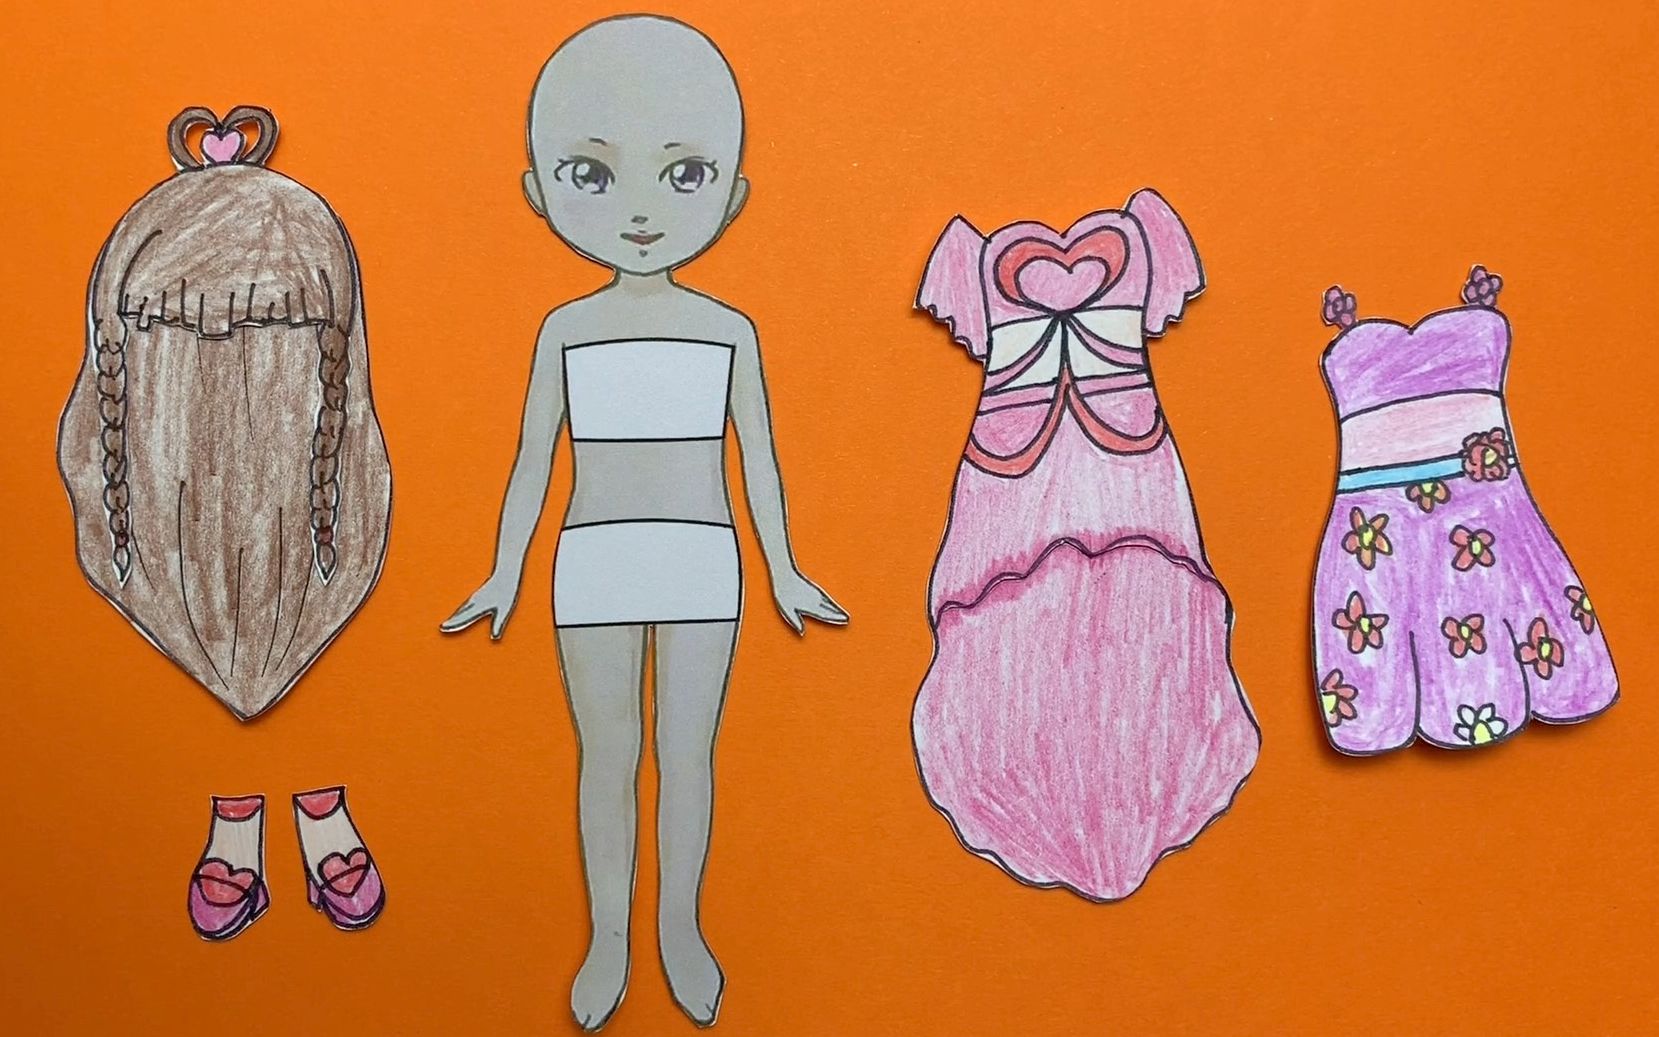 创意手绘教程:叶罗丽纸娃娃王默的两个装扮哪个是你的最爱呢?